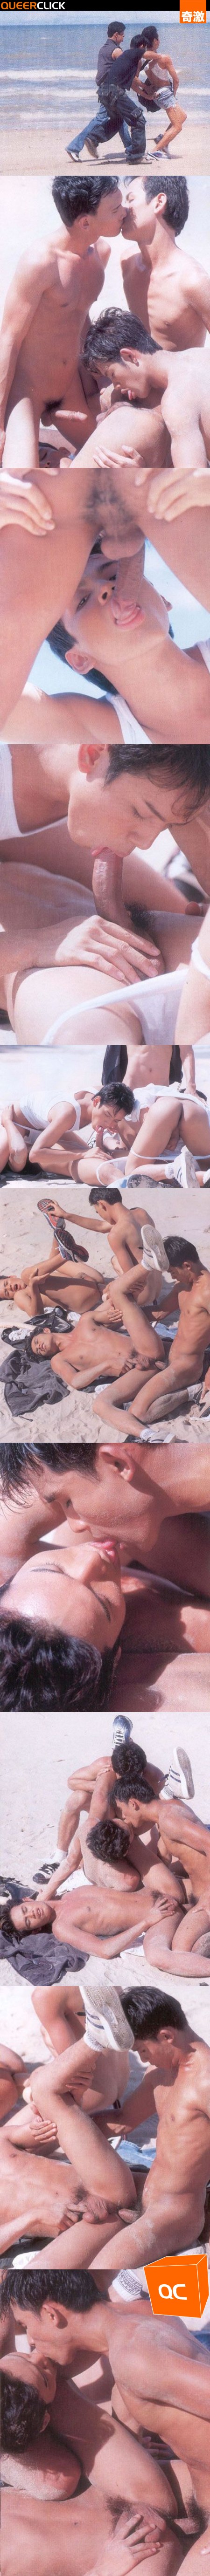 海灘上的性愛